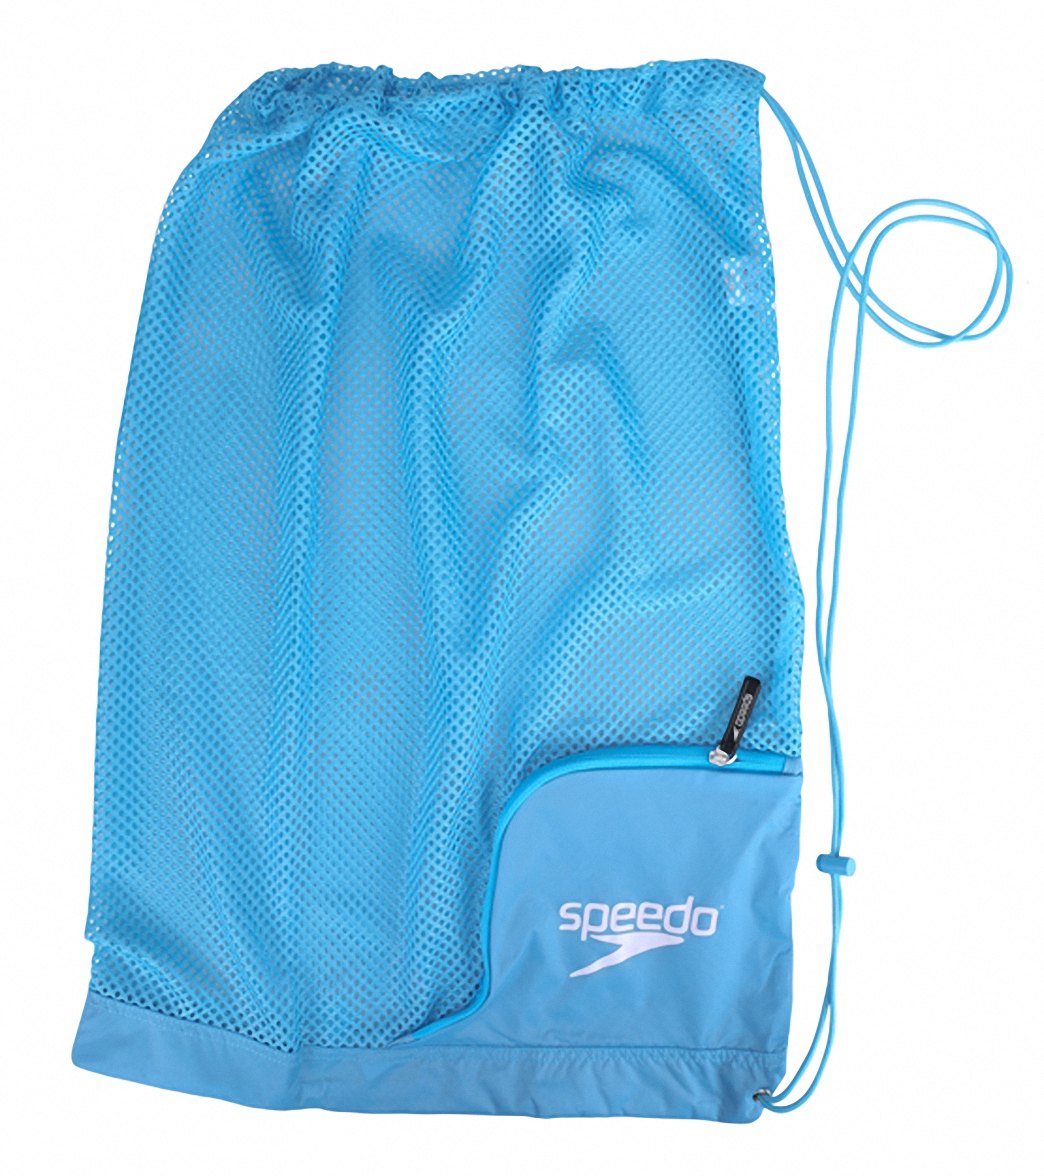 Speedo Ventilator Mesh Bag - Blue Grotto - Swimoutlet.com